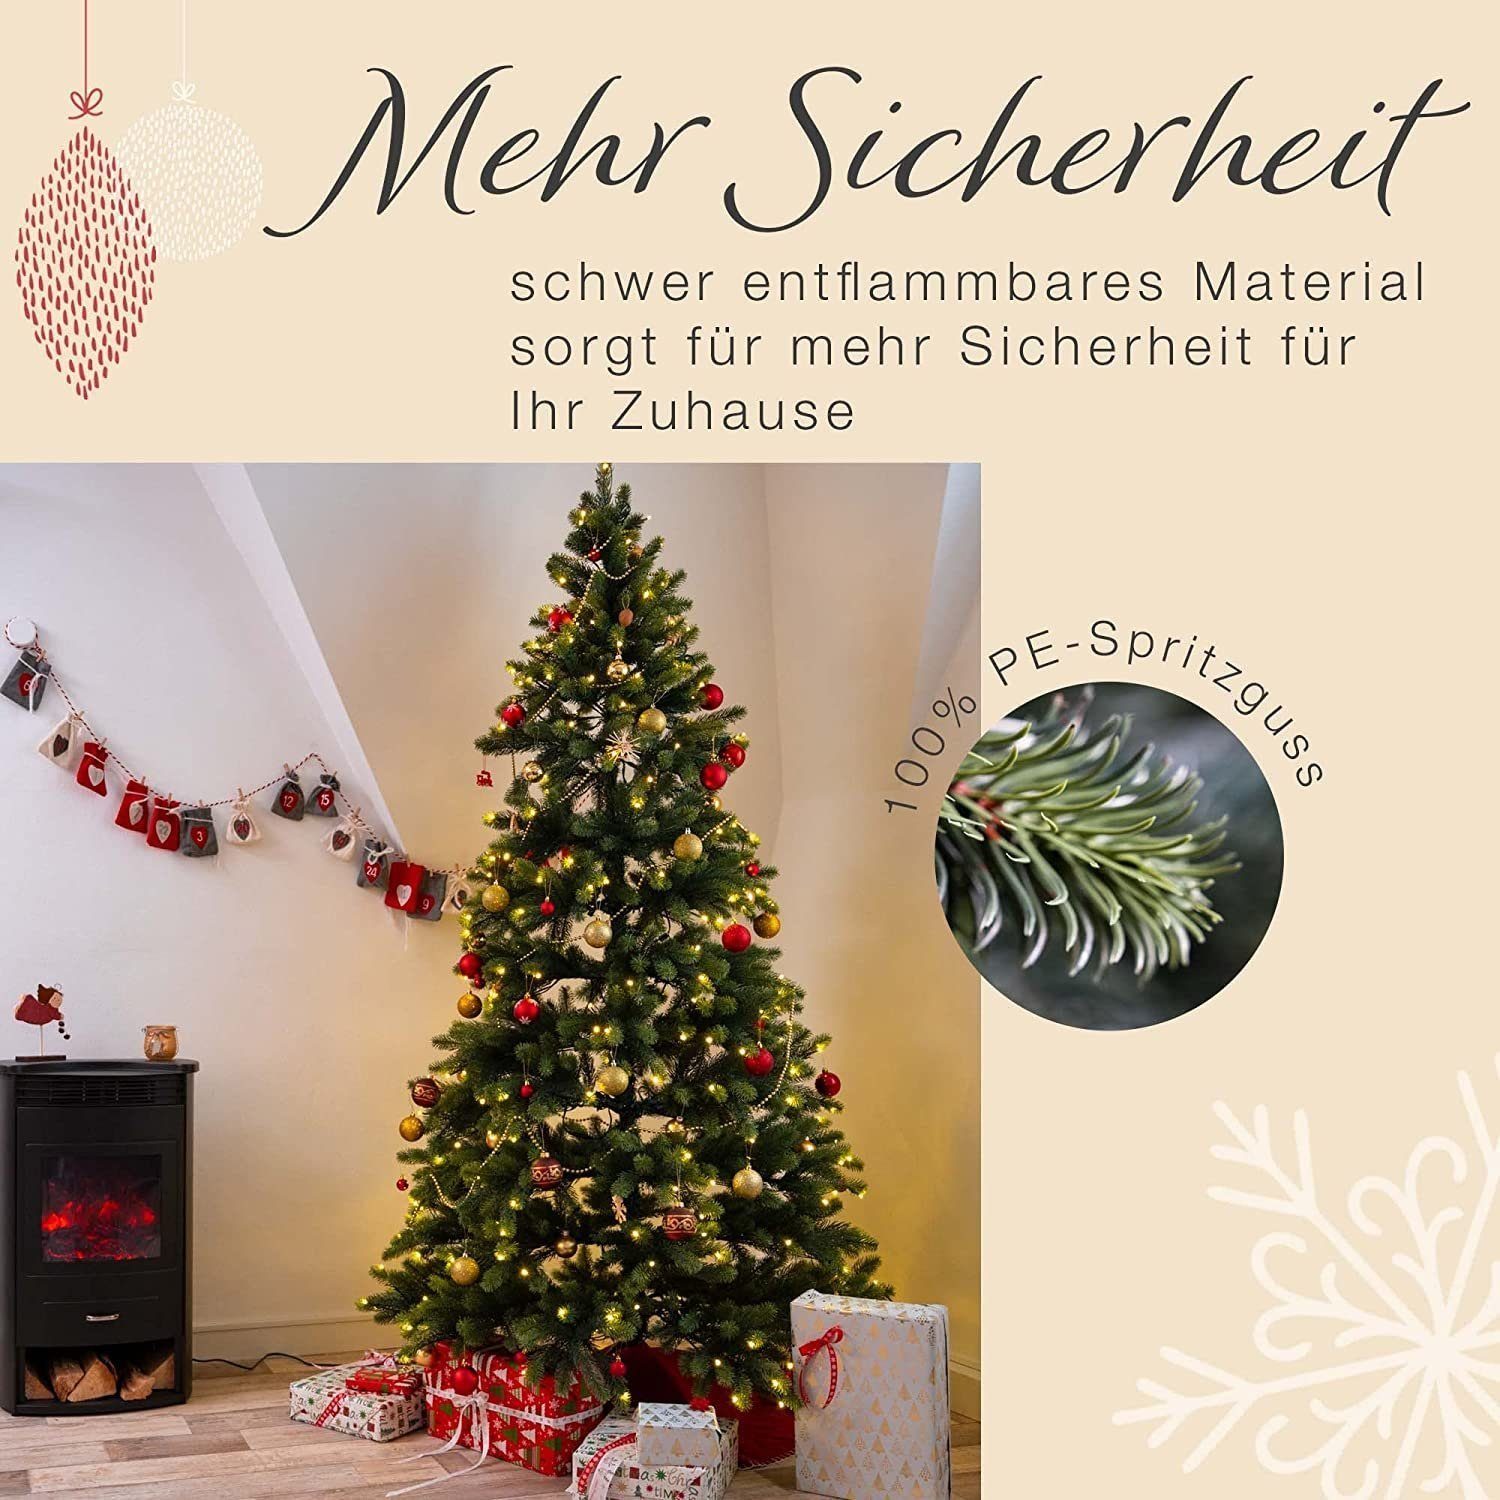 Weihnachtsbaum, Weihnachtsbaum Spritzguss Extrem Spritzguss hochwertig mit LED Weihnachtsbaum Beleuchtung, SCHAUMEX Künstlicher Künstlicher